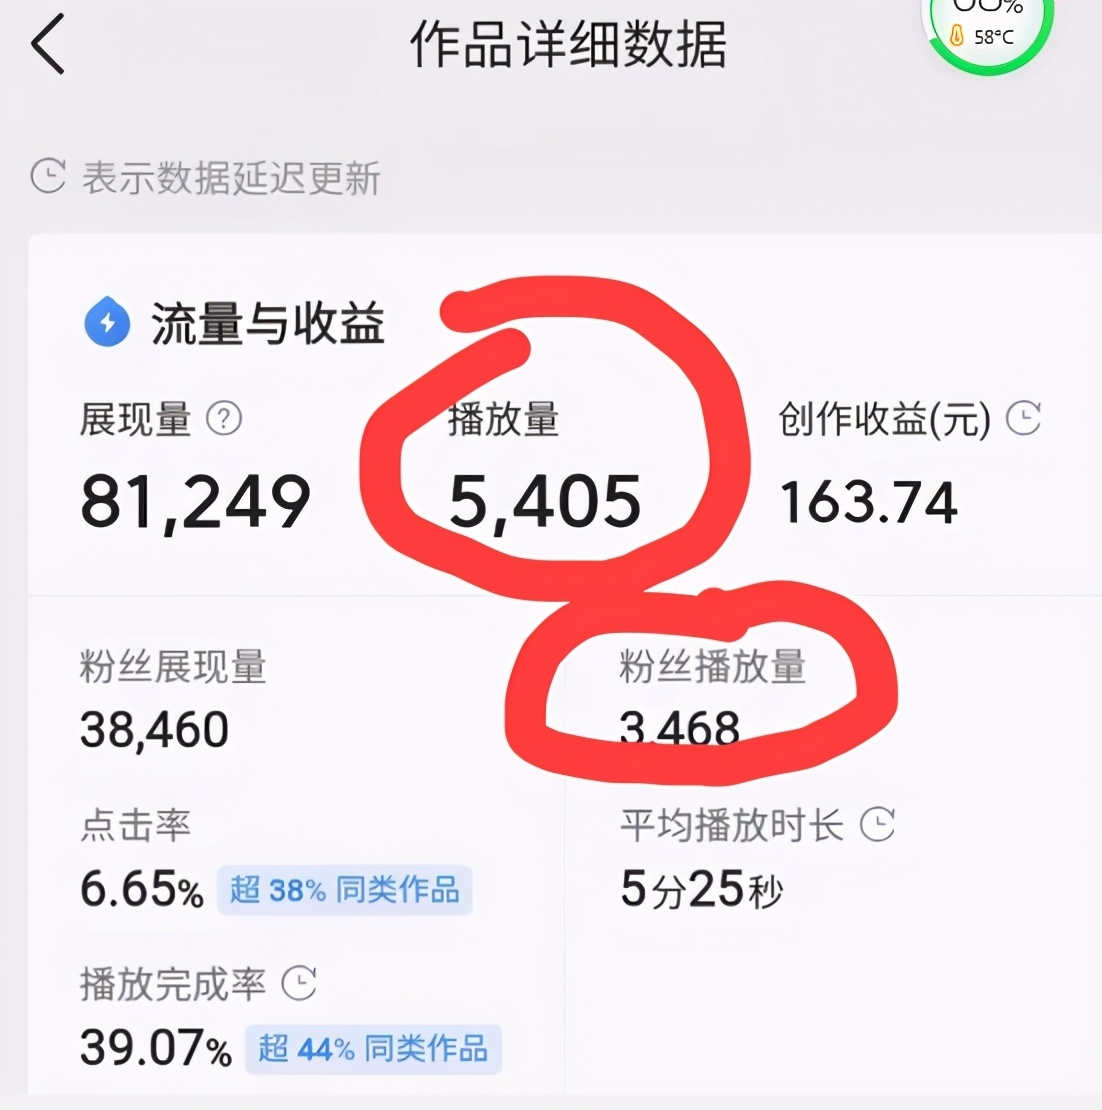 网易媒体公众平台登录_搜狐号自媒体平台怎么登录_腾讯融媒体平台登录